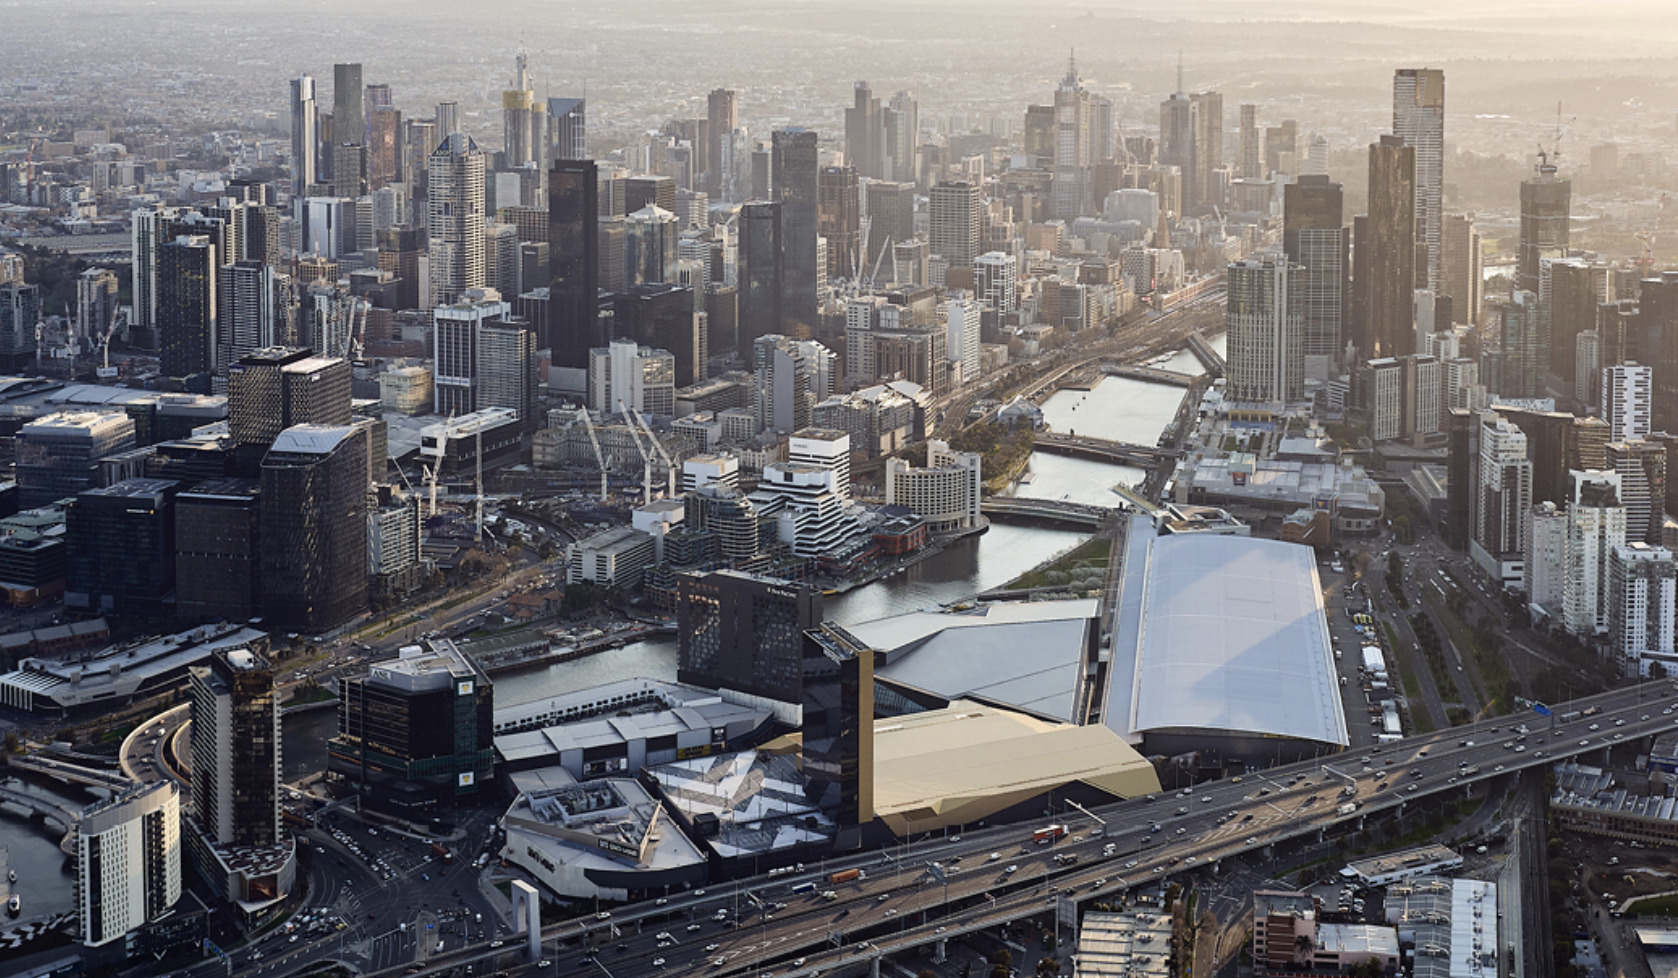 Melbourne Convention & Exhibition Centre